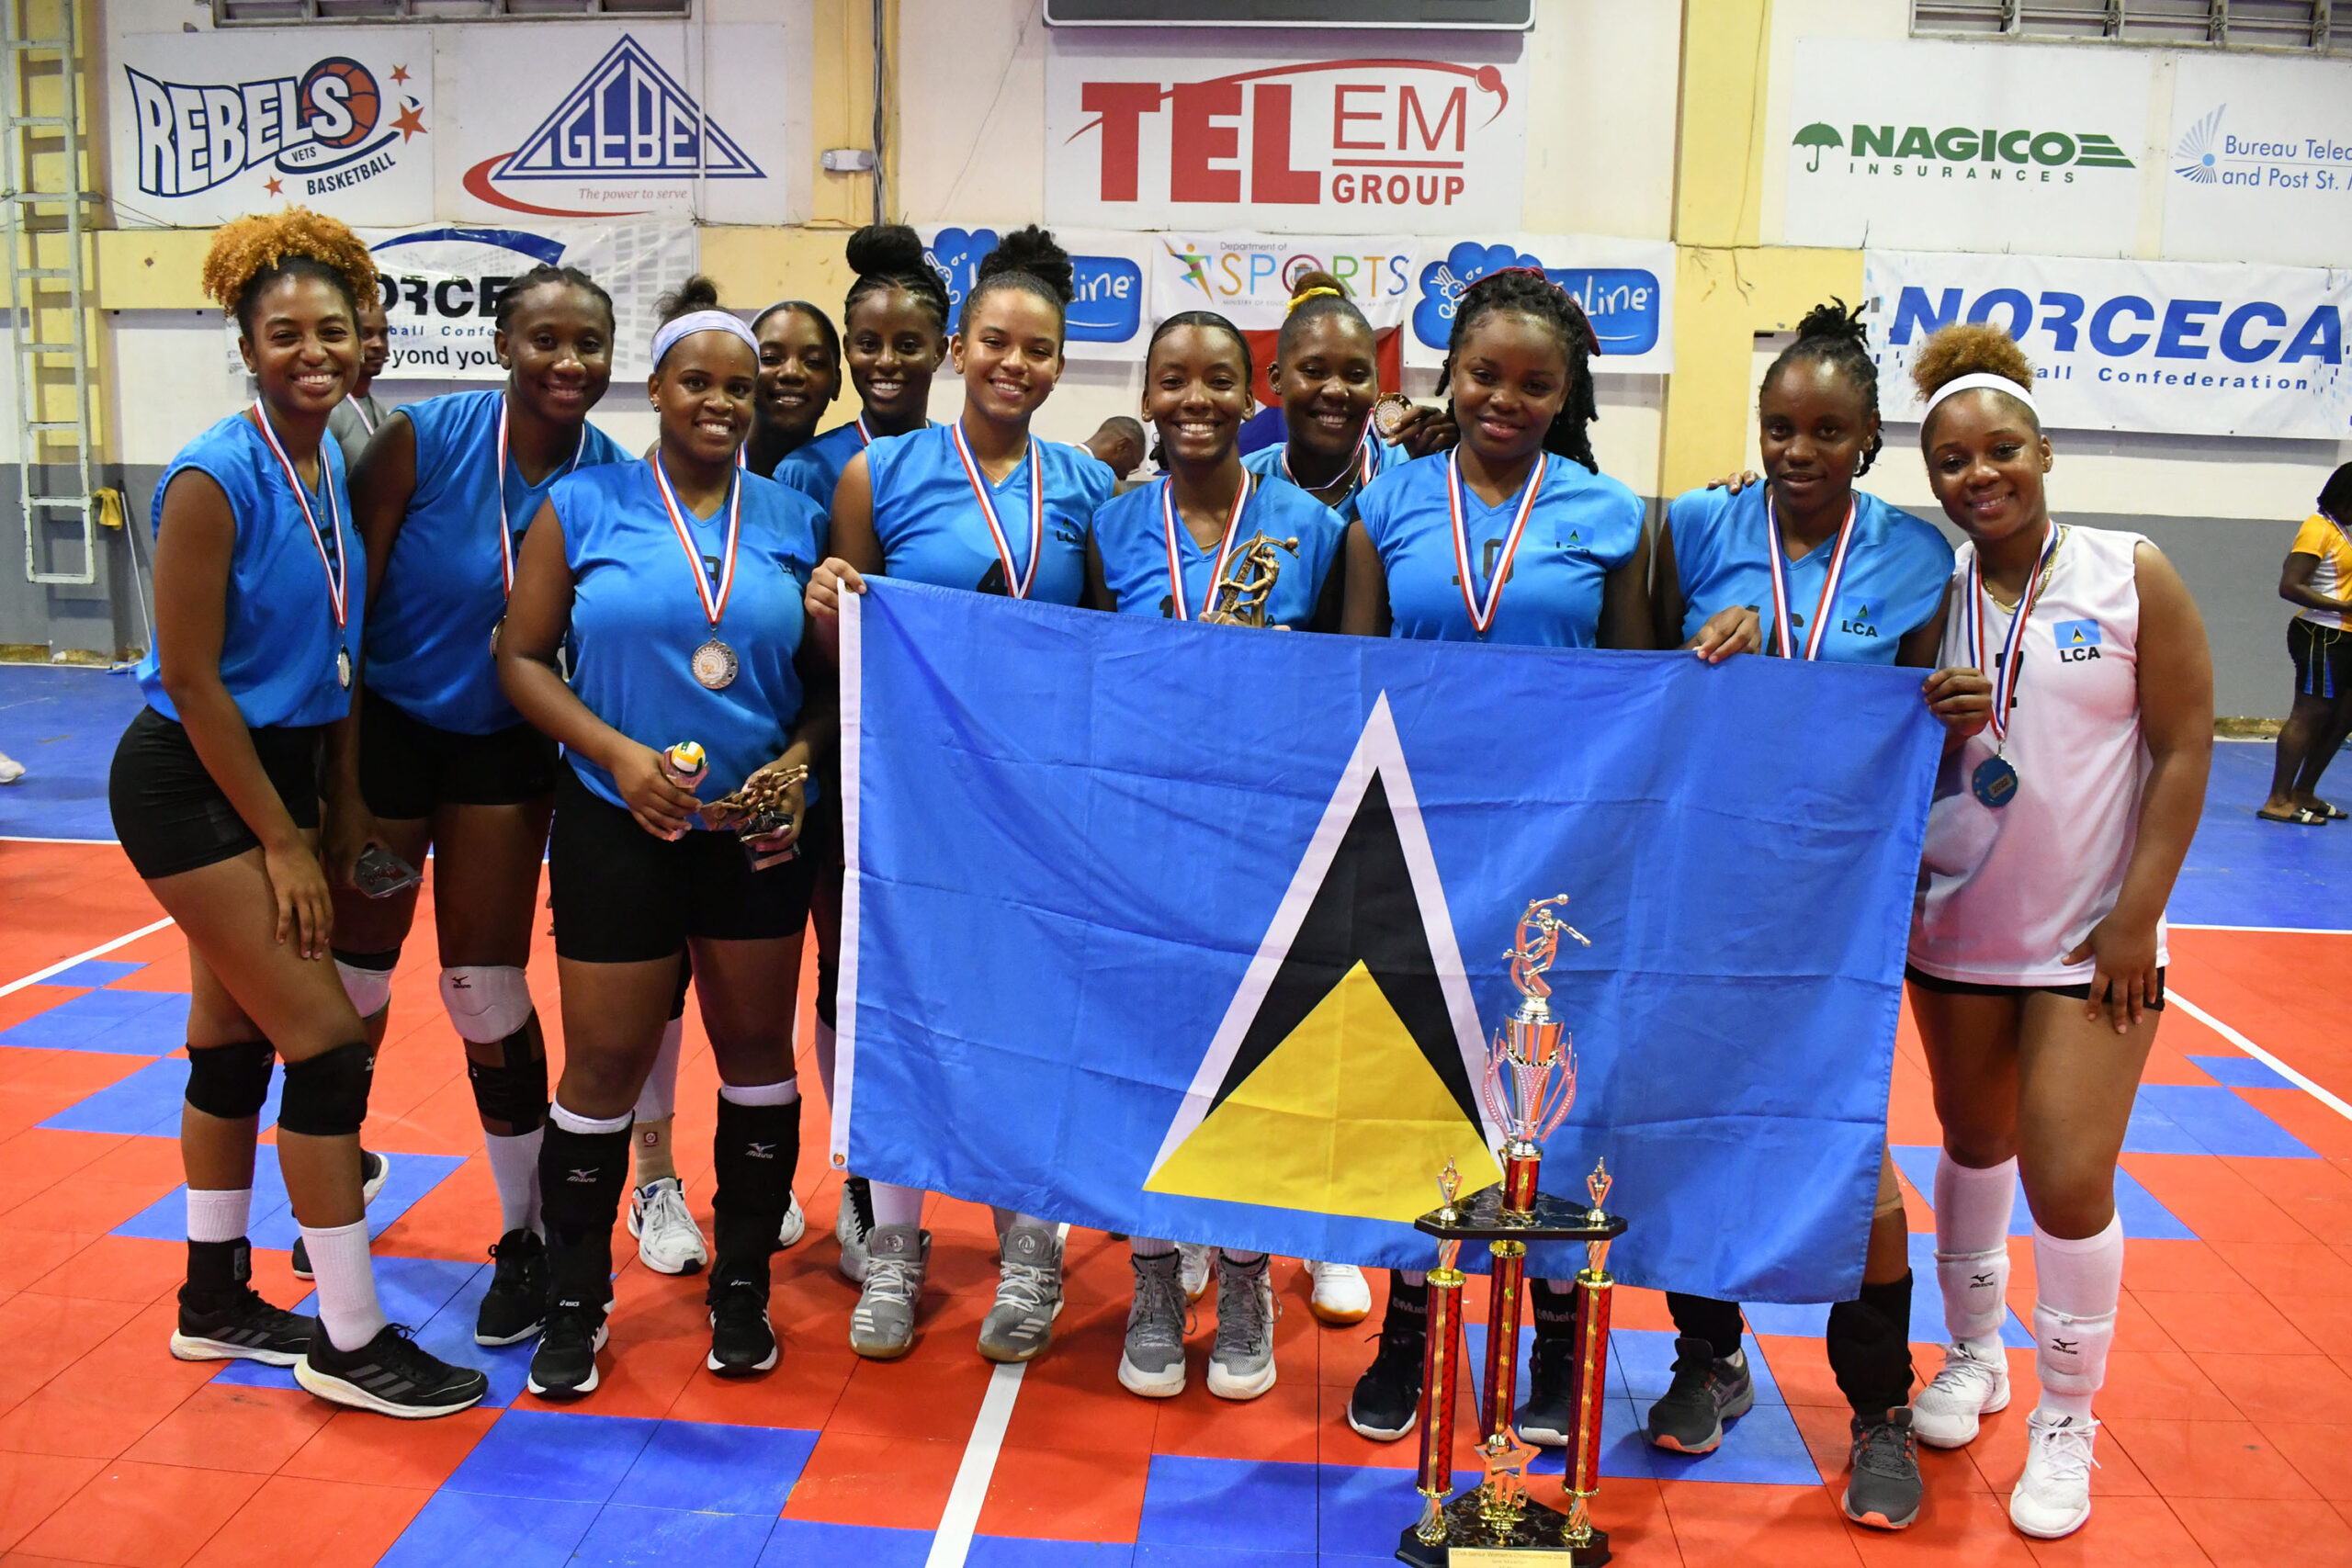 St. Lucia dominates BVI in ECVA female championship match